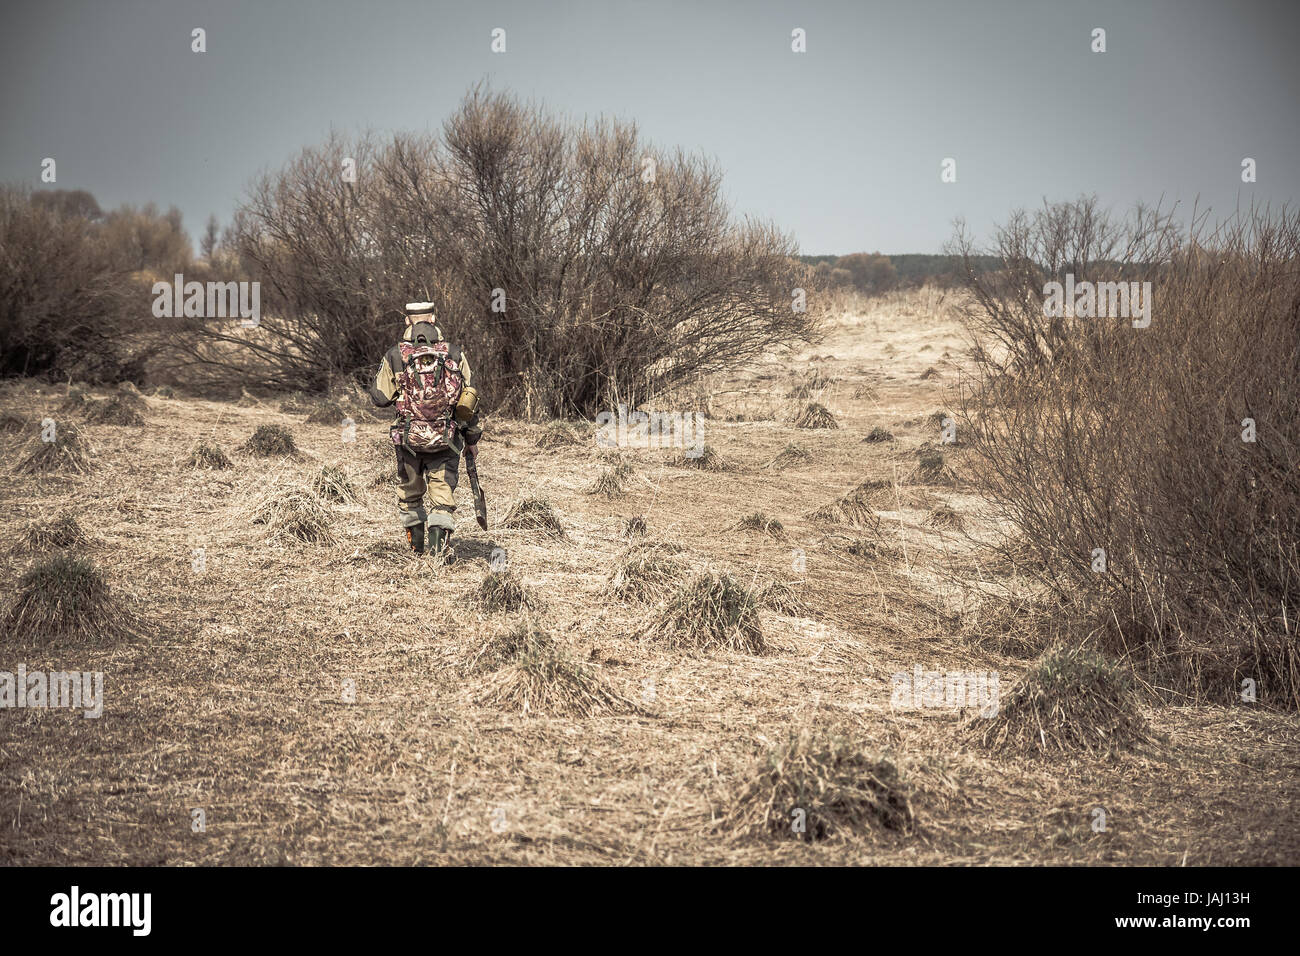 Hombre cazador de camuflaje con pistola atravesando la zona rural con pasto seco y arbustos durante la caza Foto de stock